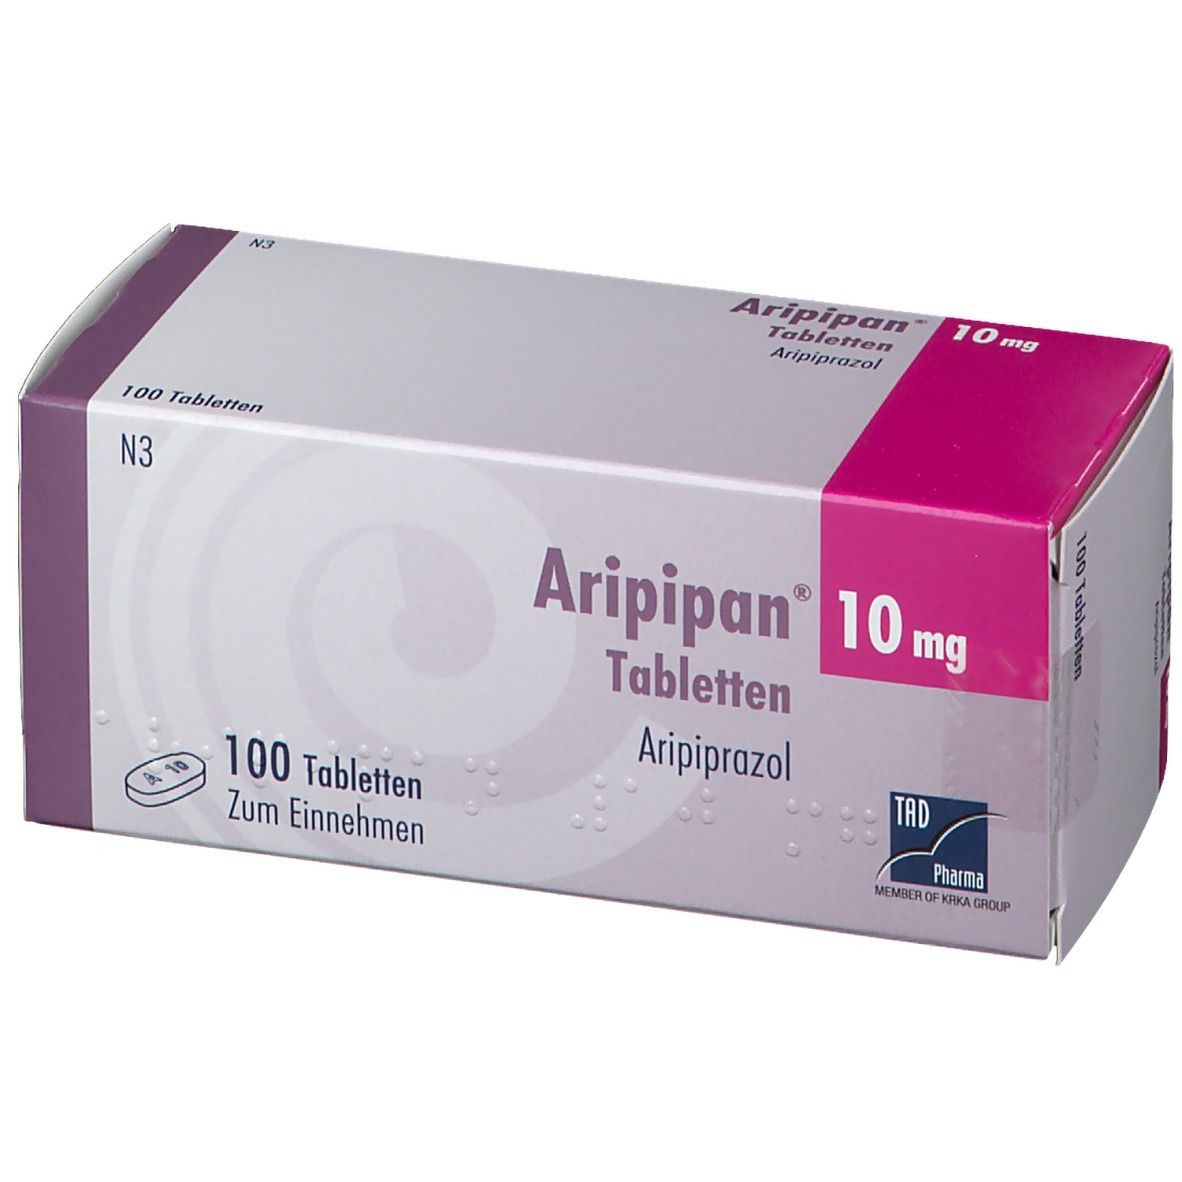 Aripipan® 10 mg